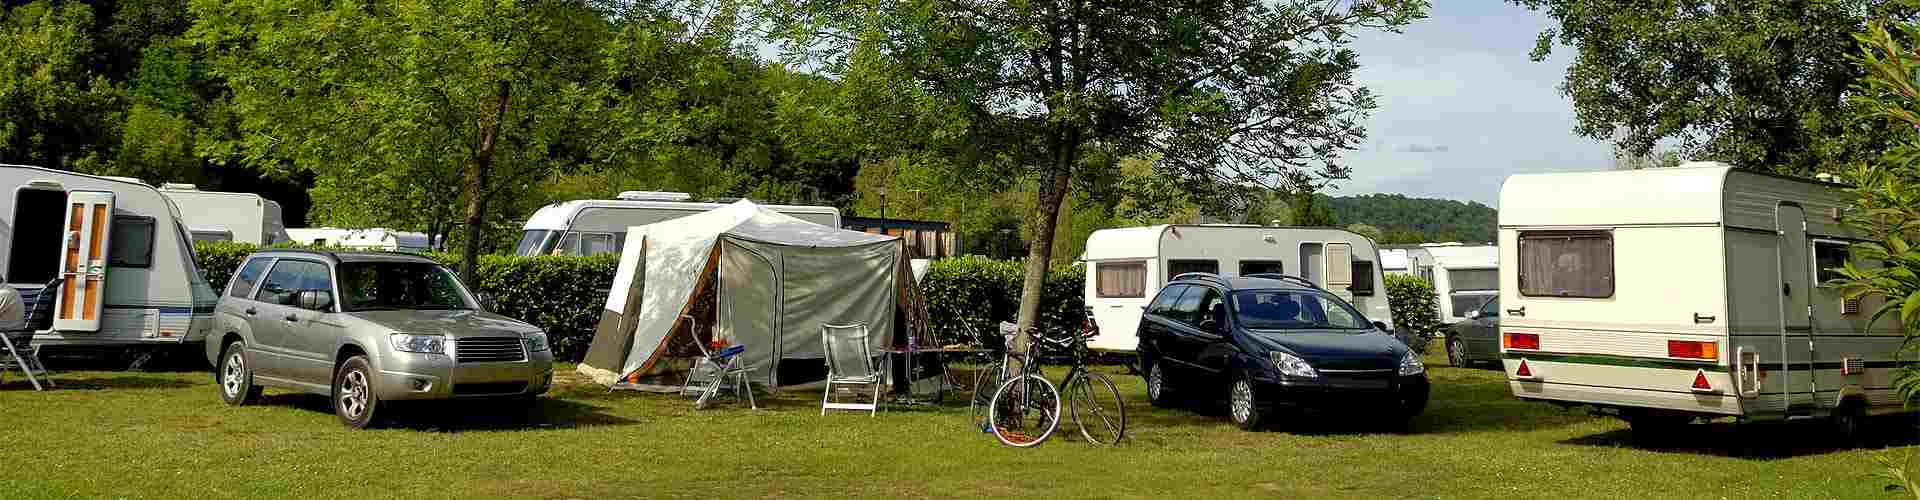 Campings y bungalows en Torralba de los Frailes